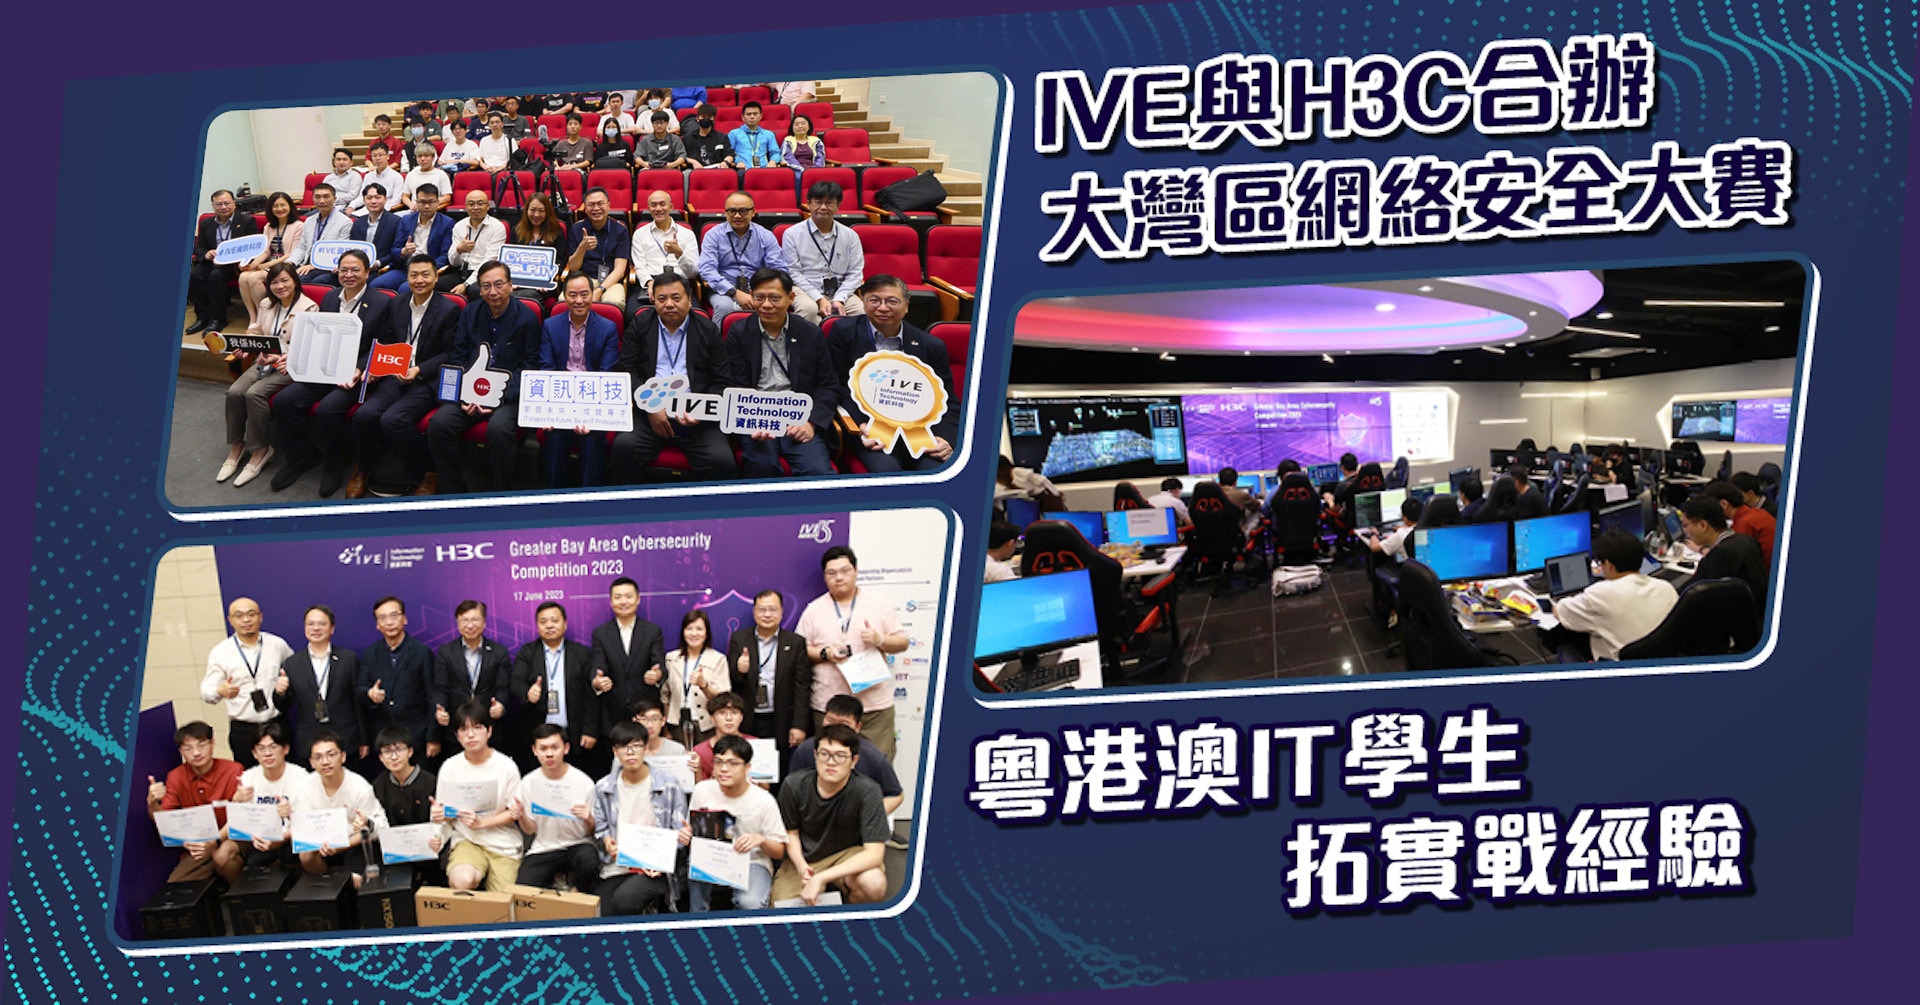 IVE與H3C合辦大灣區網絡安全大賽 粵港澳IT學生拓實戰經驗